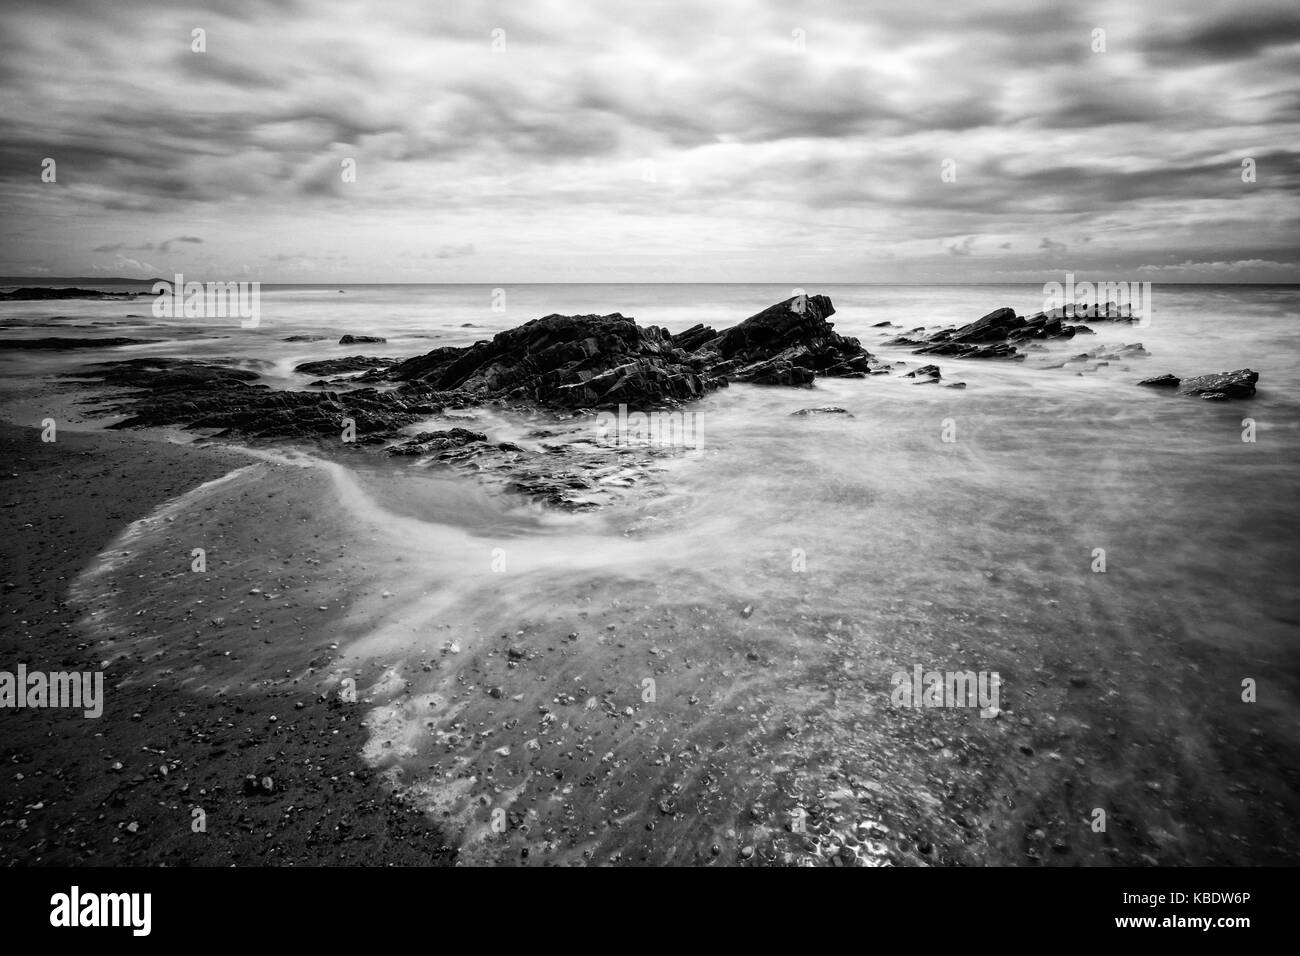 Piedras irregulares y agua blanda bañando en la playa. Esta imagen fue tomada en seaton, Cornualles, en el Reino Unido. Foto de stock